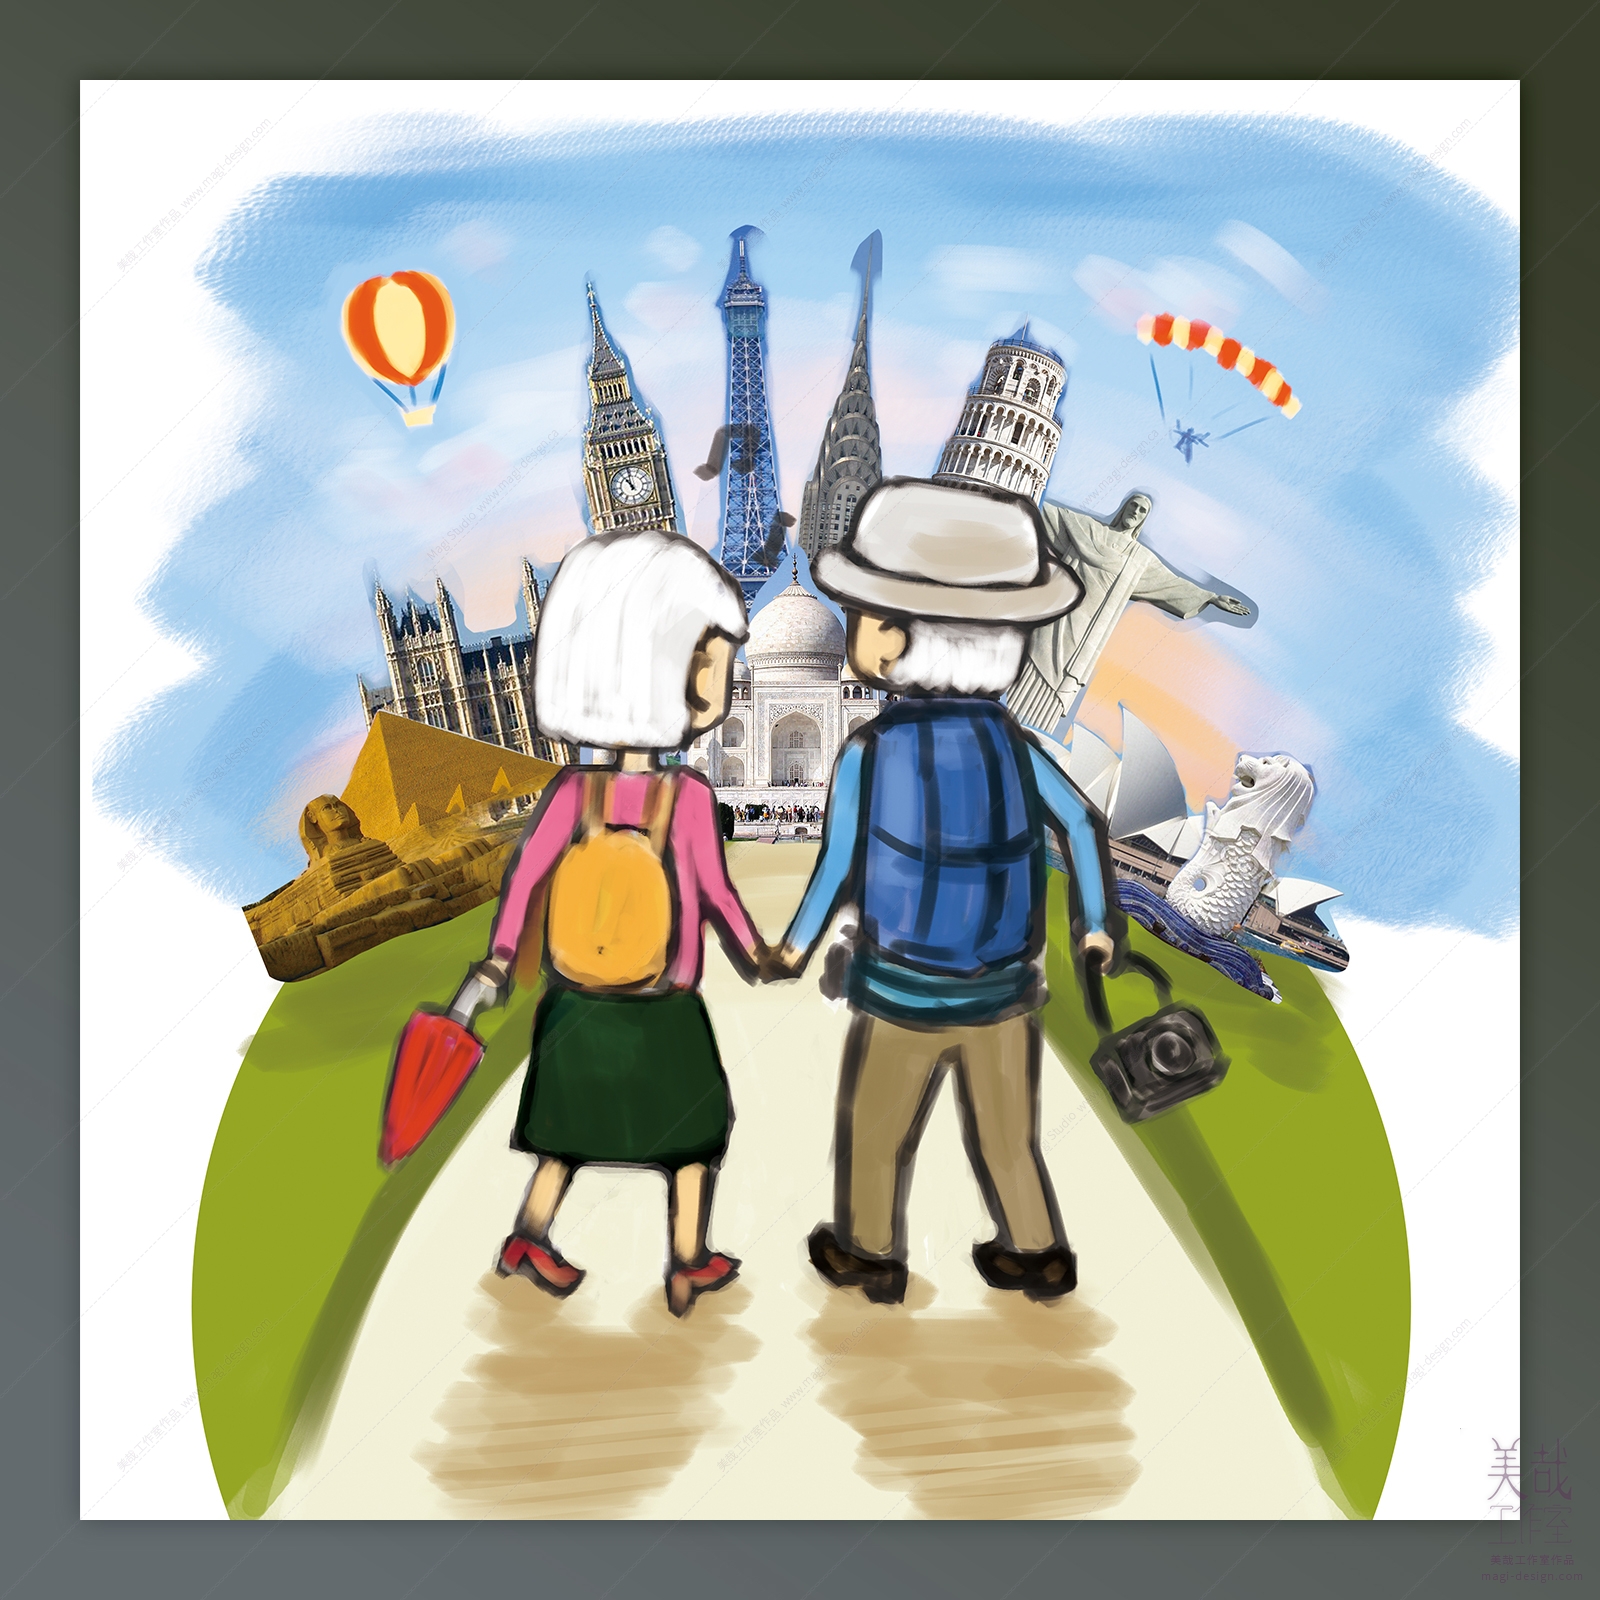 保险行业主题插画：年迈夫妻携手旅行-草稿阶段布局讨论